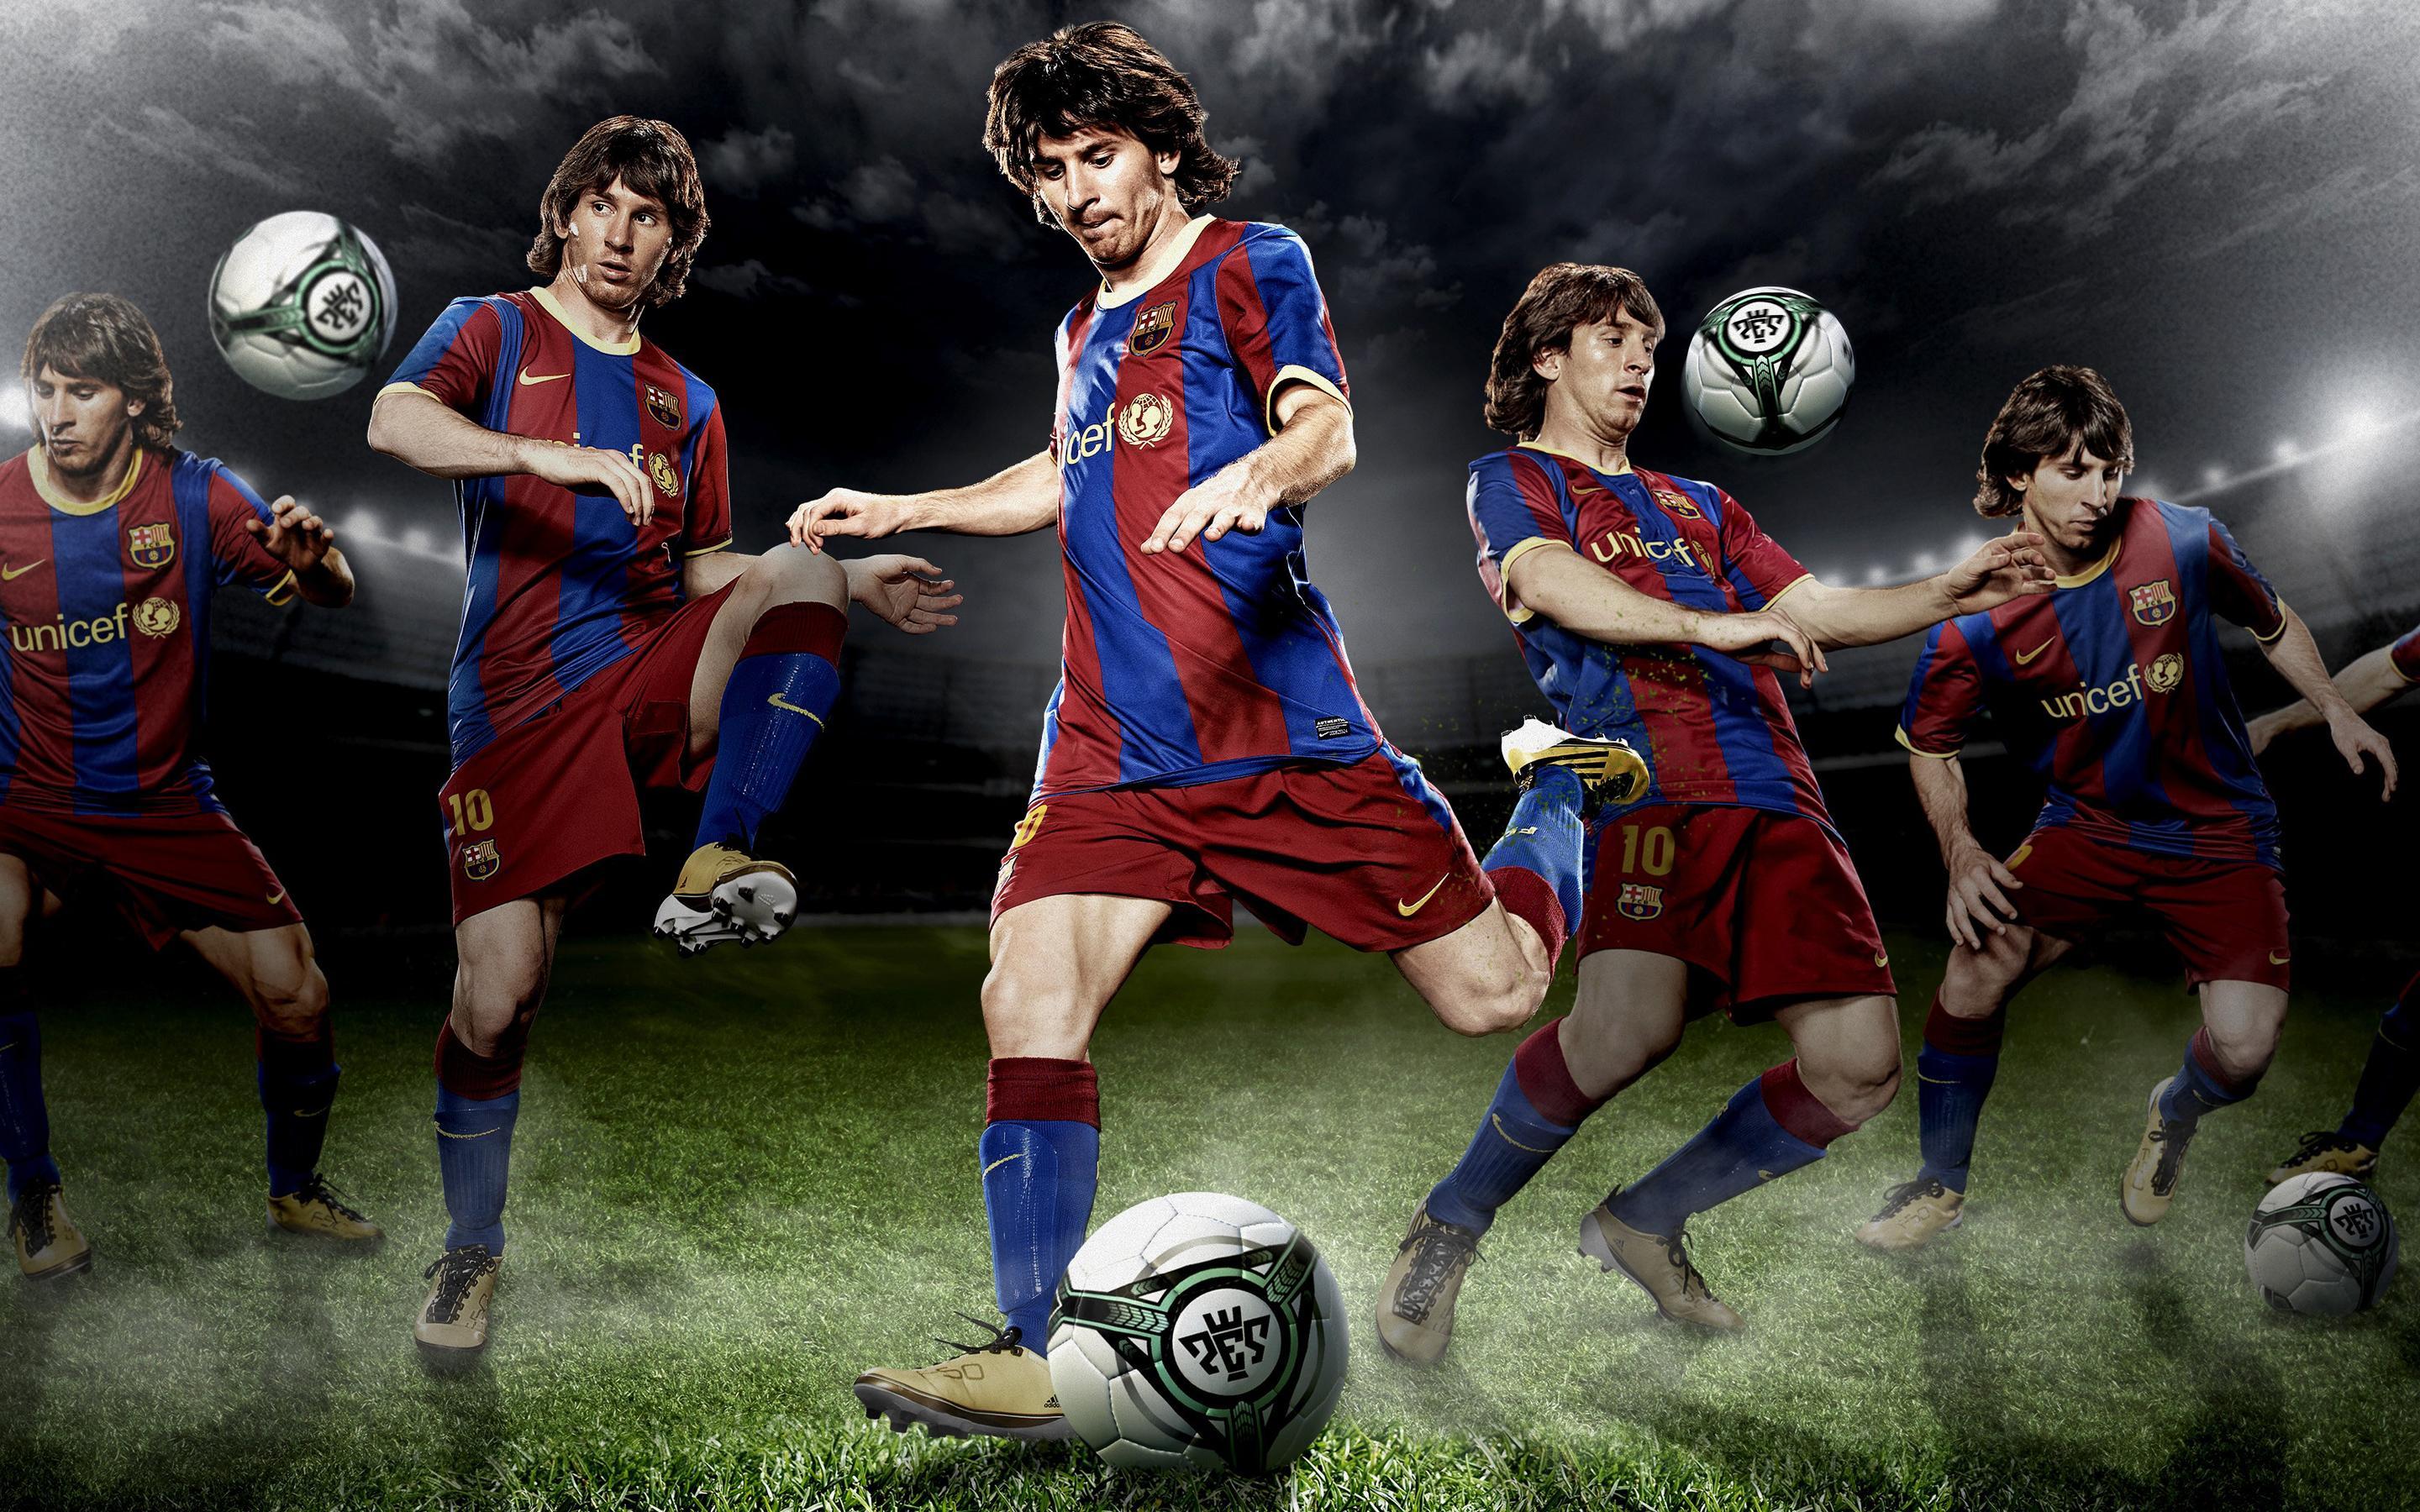 Soccer 4K wallpaper for your desktop or mobile screen free